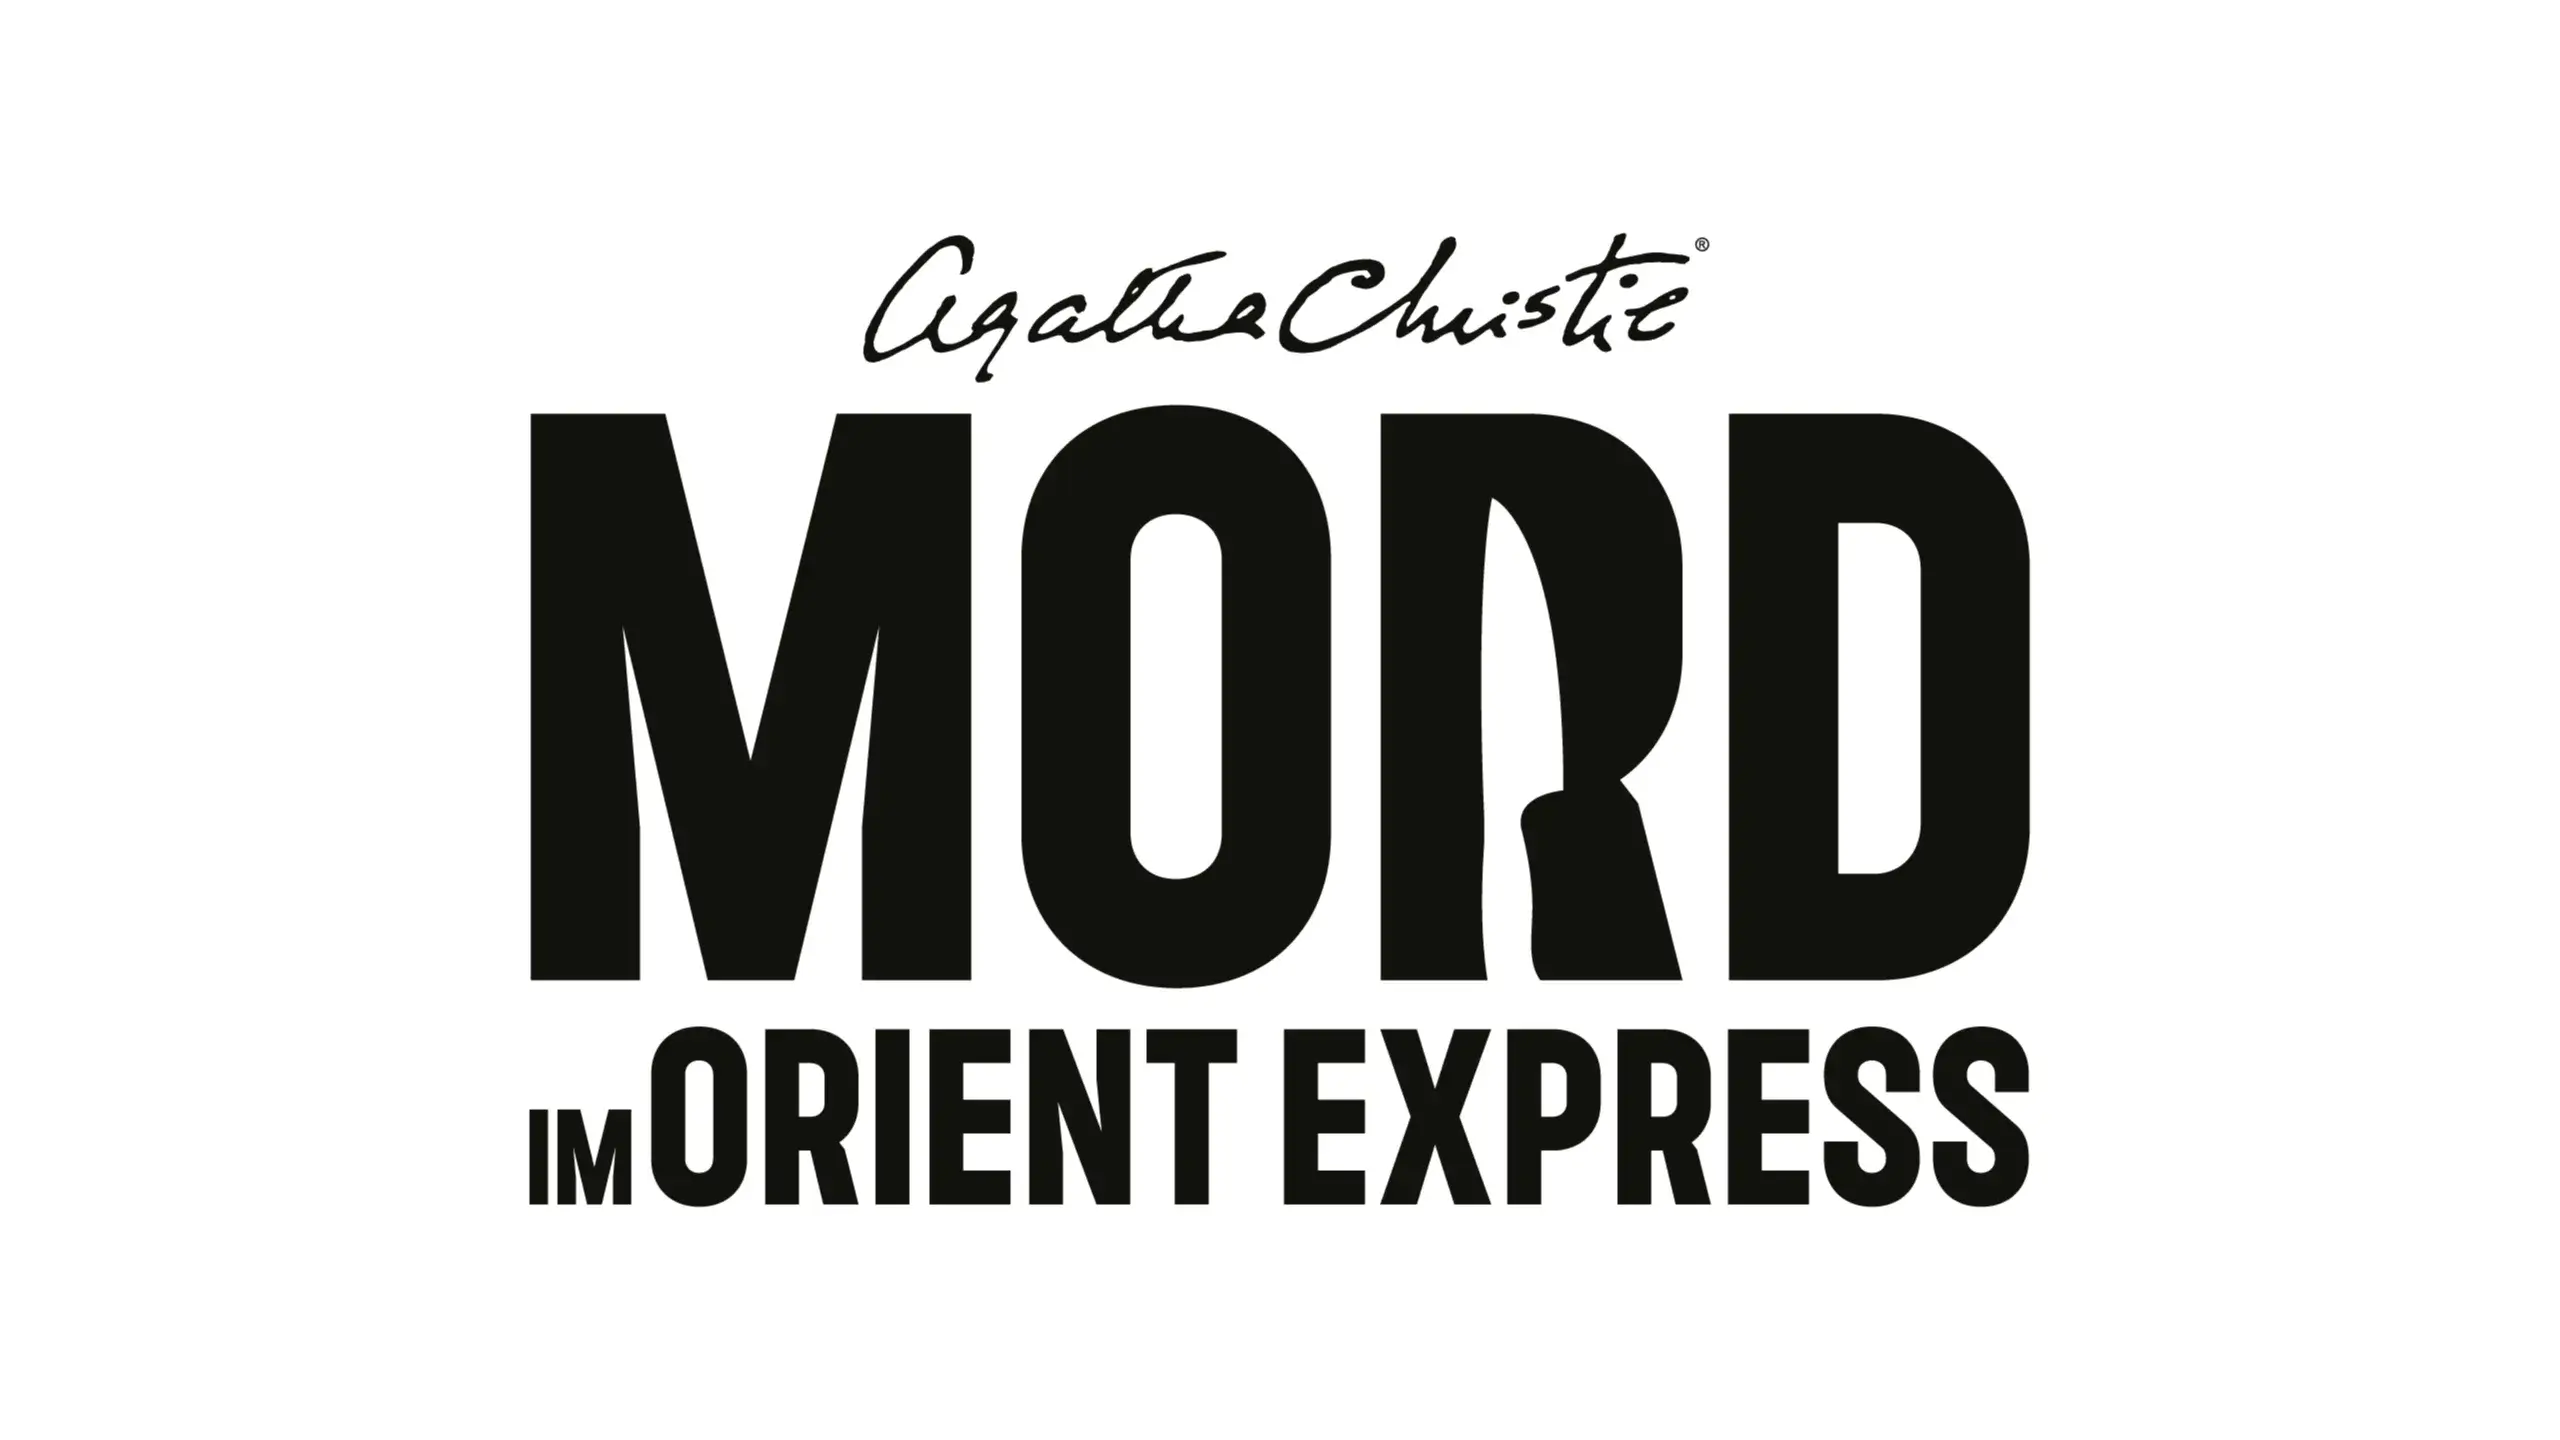 der zum Express: TestingBuddies – Detektiv-Abenteuer unabhängiges Inhalte Spielemagazin angekündigt Christie Dein und Release-Datum Mord im Deluxe Orient Edition - - Agatha